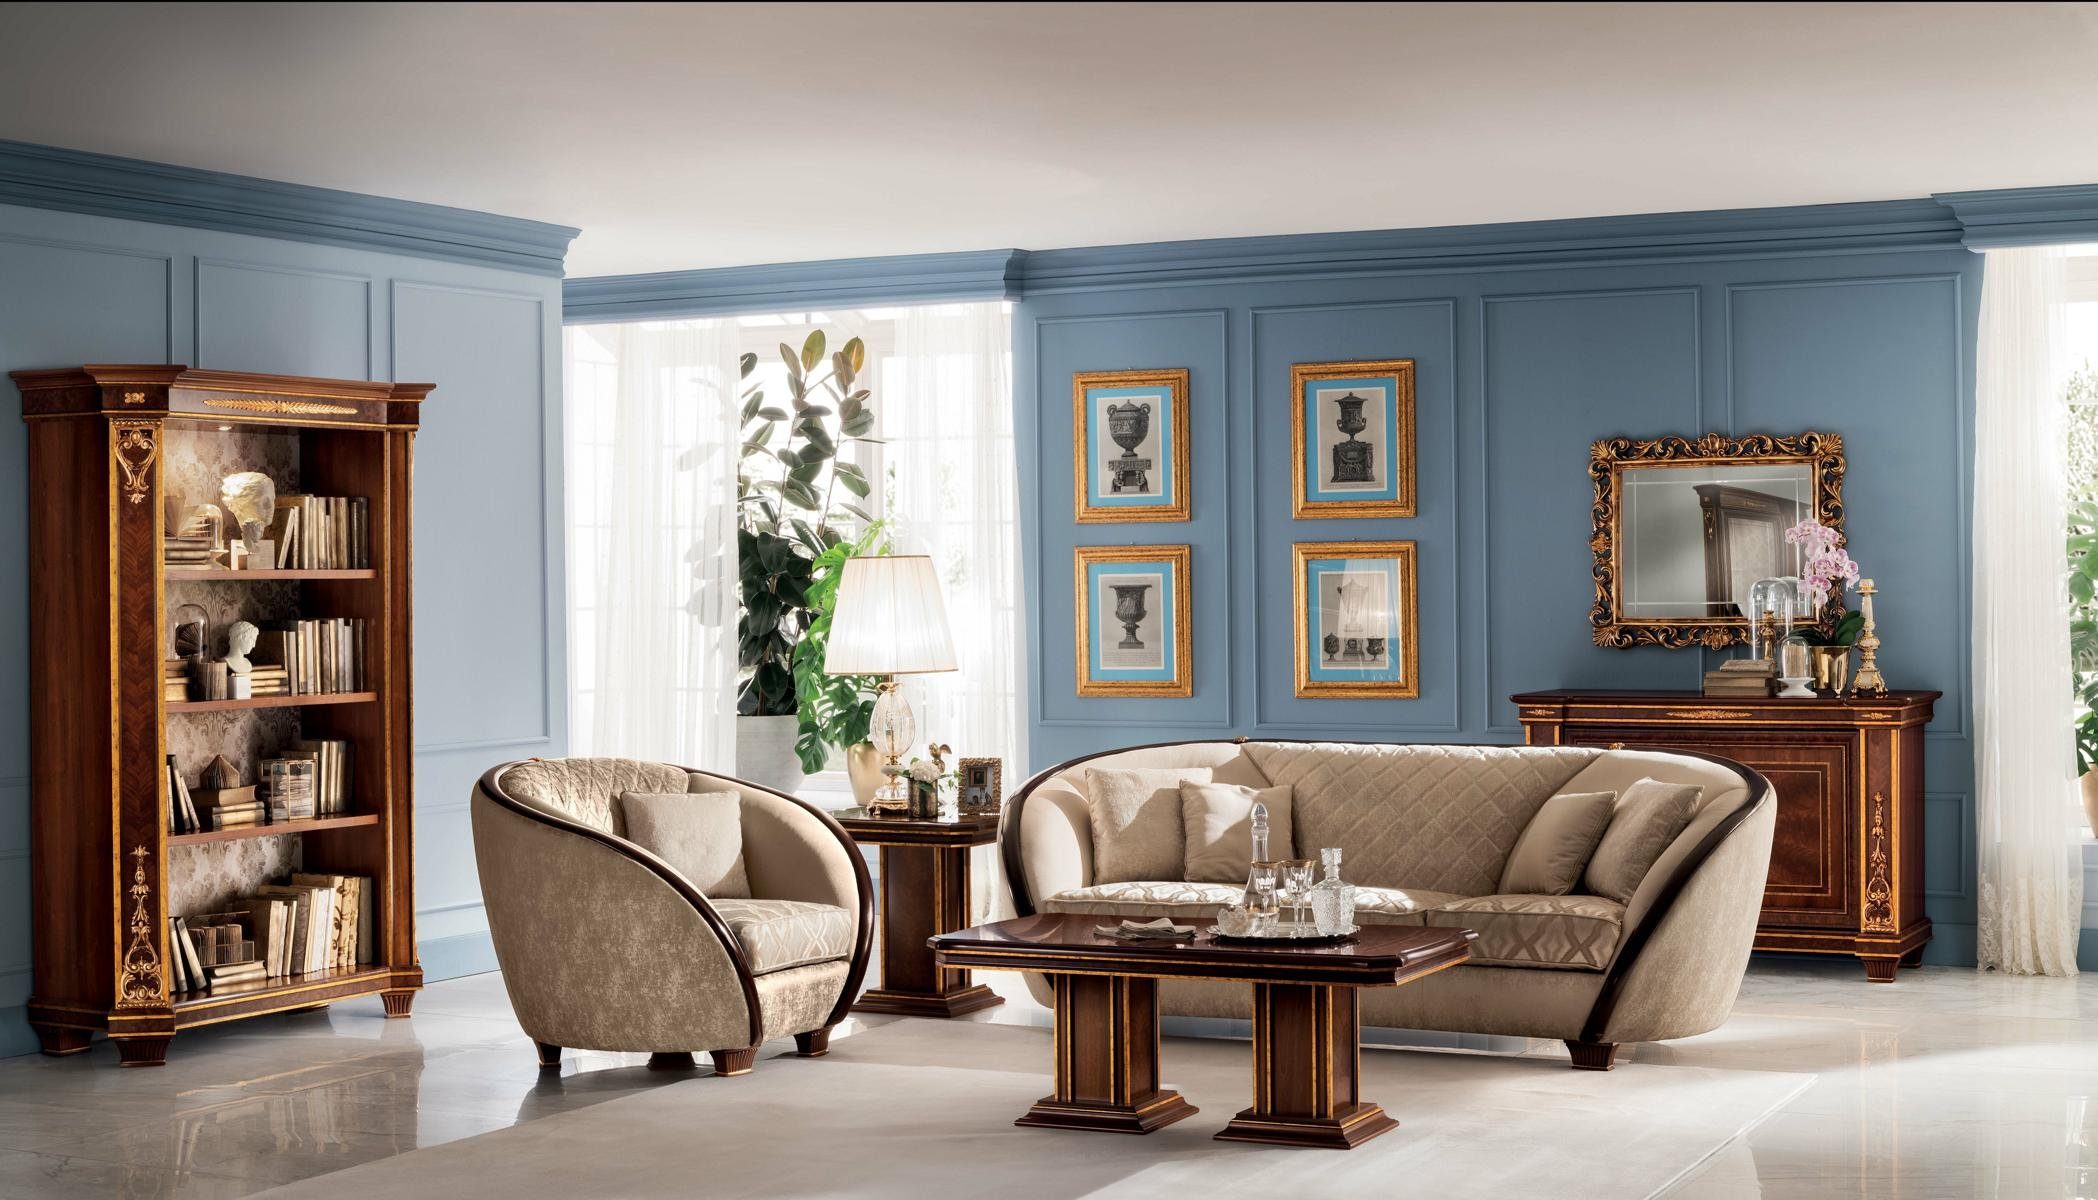 JVmoebel Wohnzimmer-Set, Luxus Klasse Sofagarnitur arredoclassic™ Möbel 2+1 Couch Italienische Neu Sofa